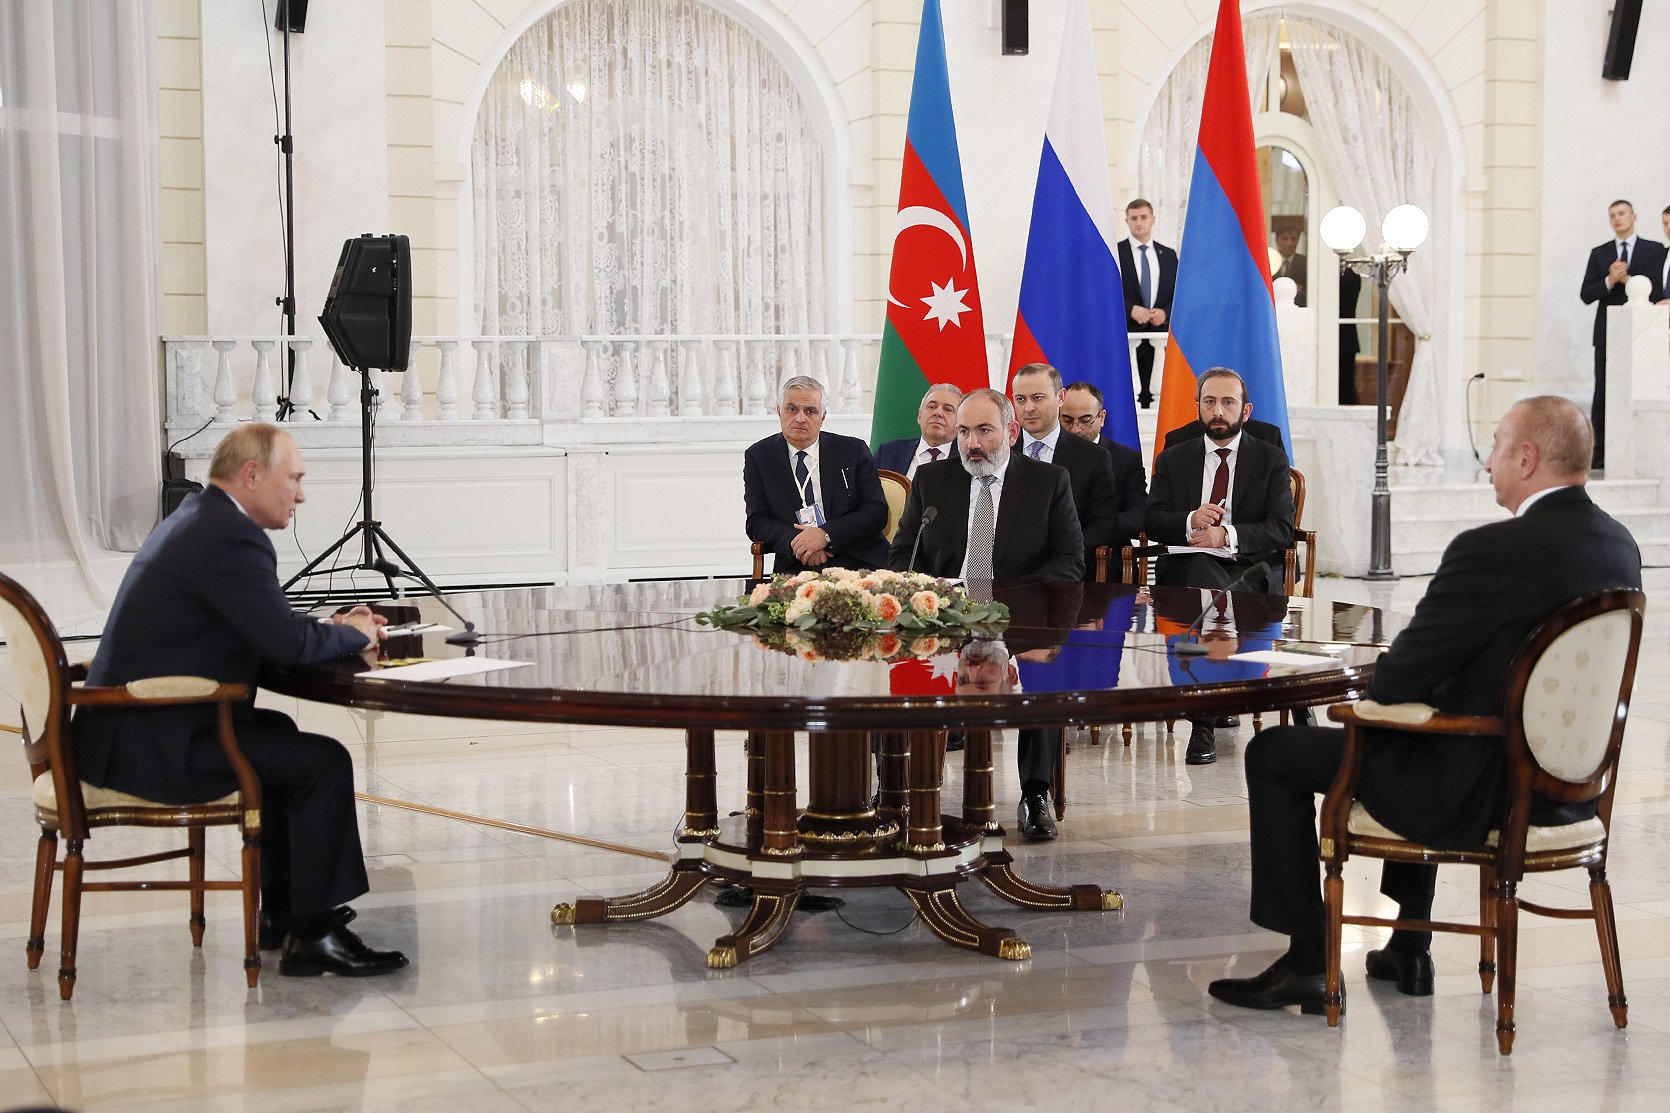 Մենք ընդունել ենք ՌԴ նախագահի միջնորդությամբ Մոսկվայում մայիսի 25-ին եռակողմ հանդիպում անցկացնելու ռուսական կողմի առաջարկը. վարչապետ